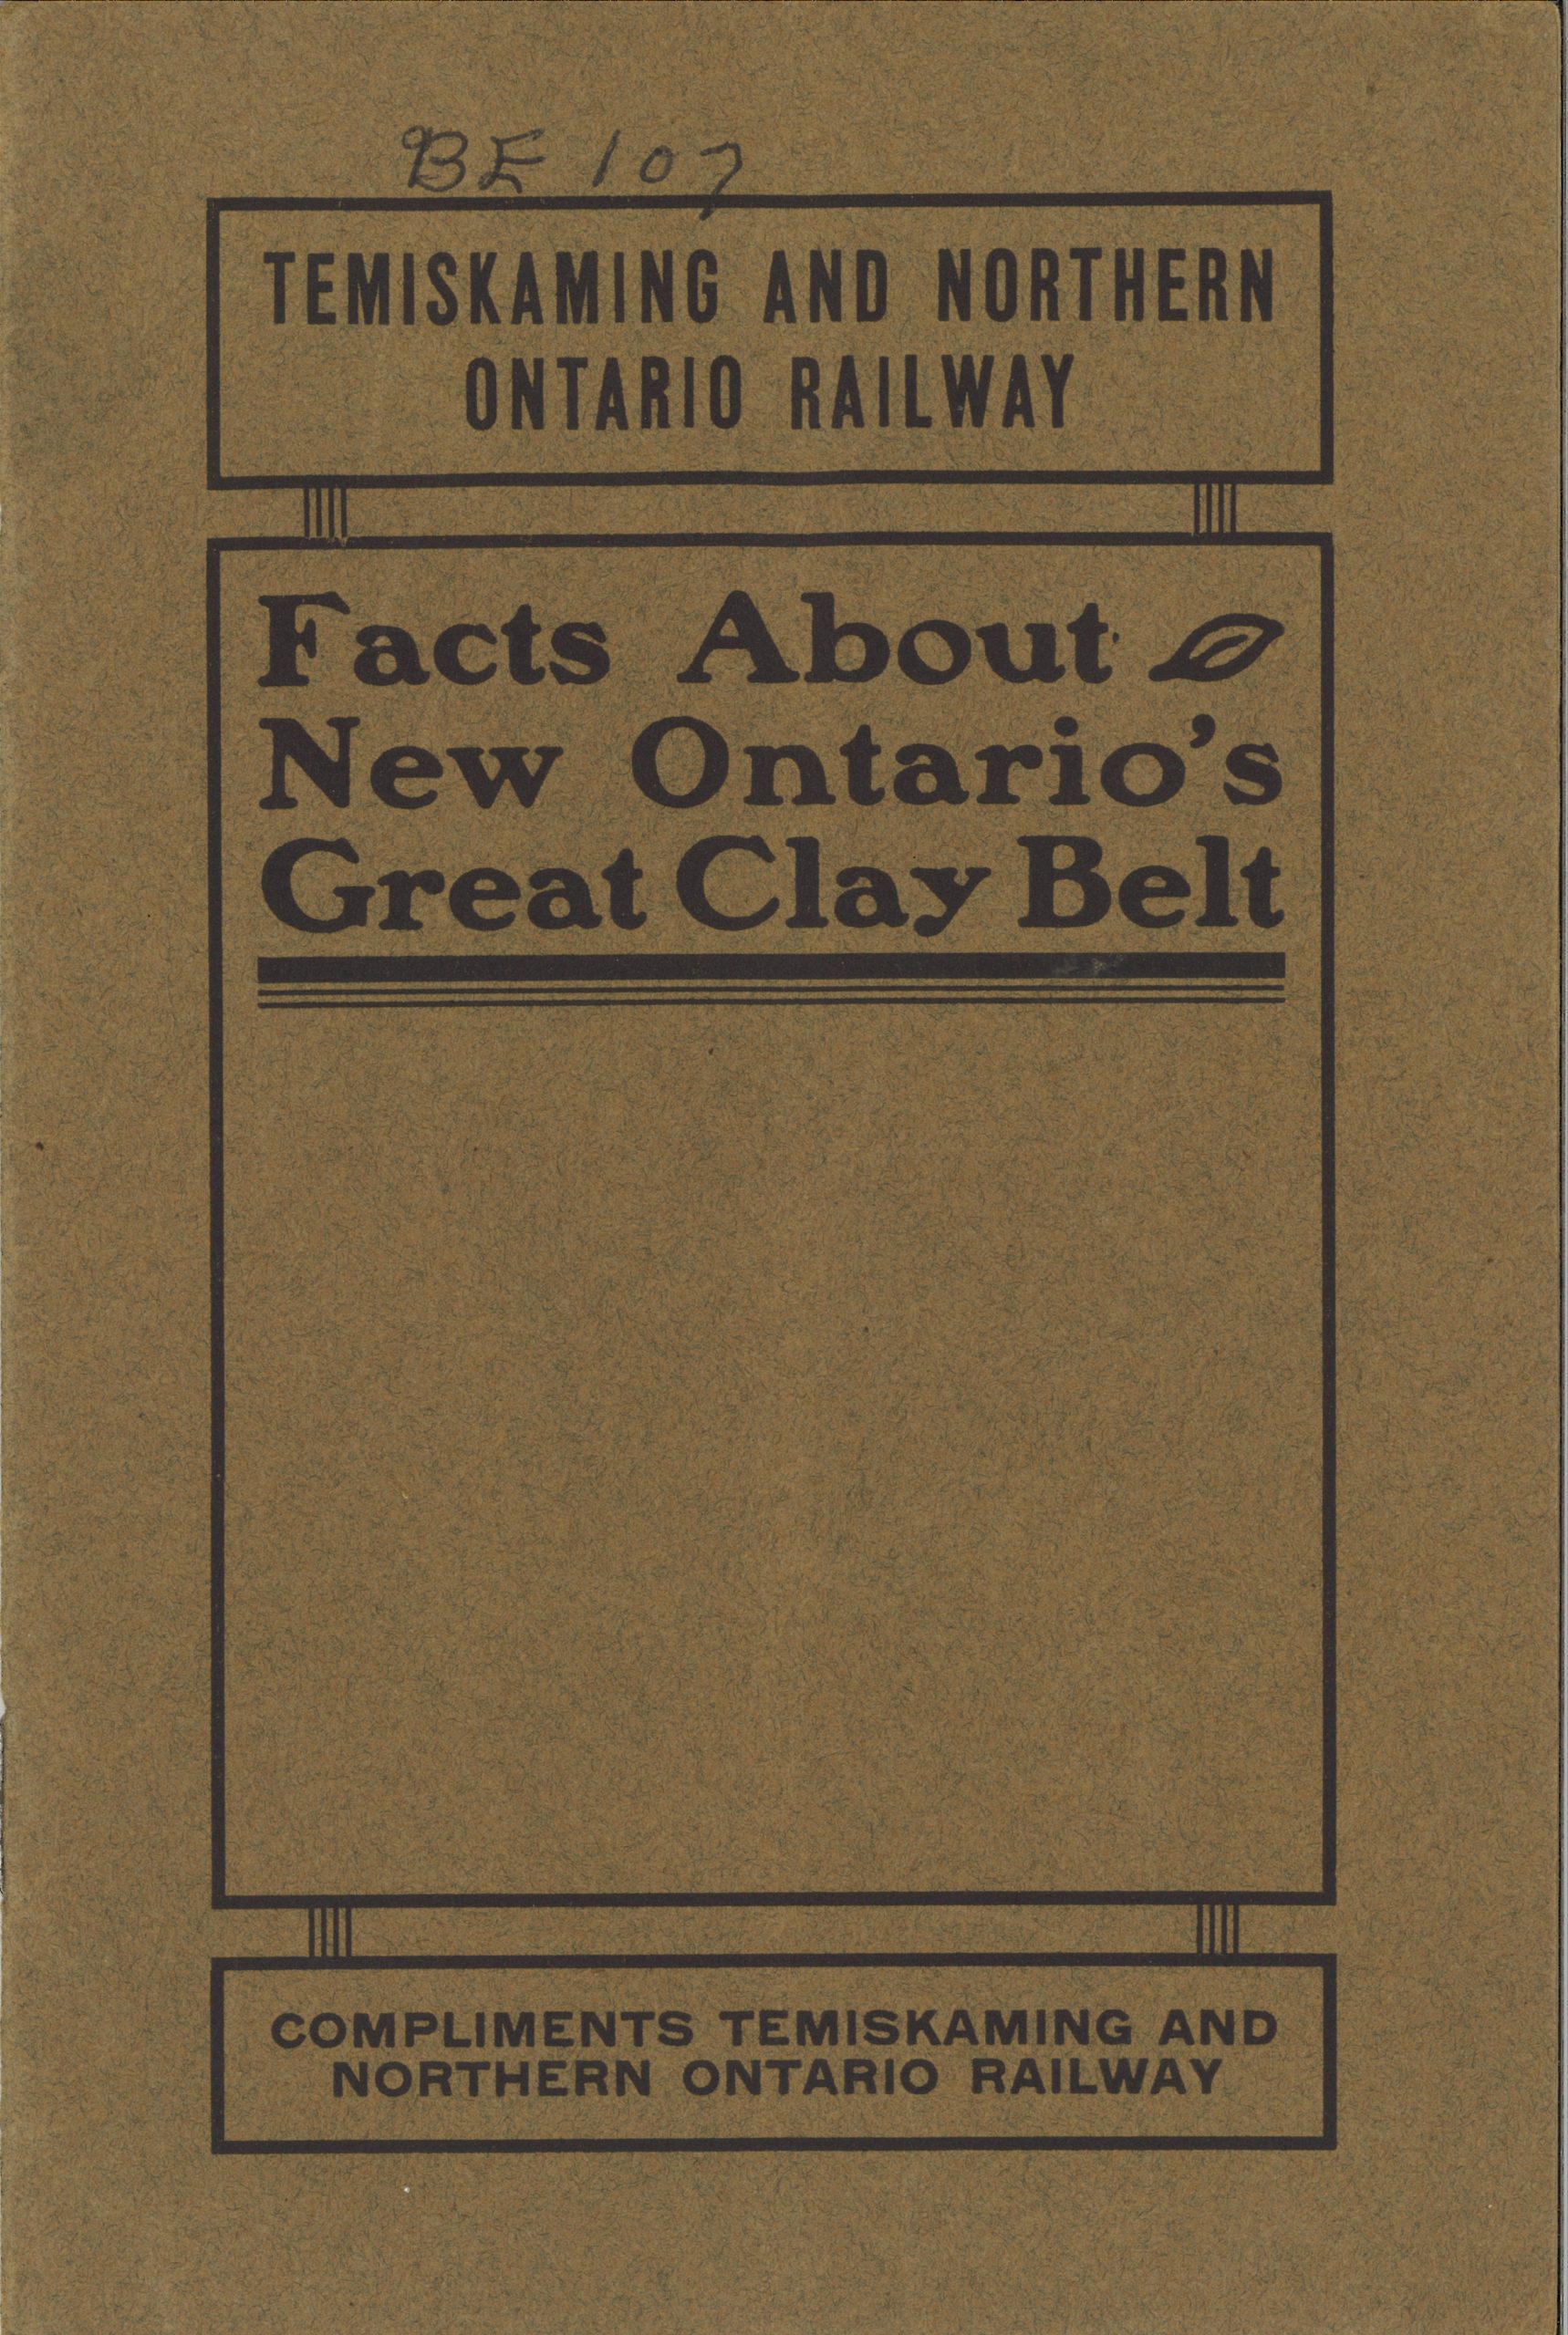 Couverture d’une brochure de couleur brune avec le titre et l’éditeur en lettres noires.